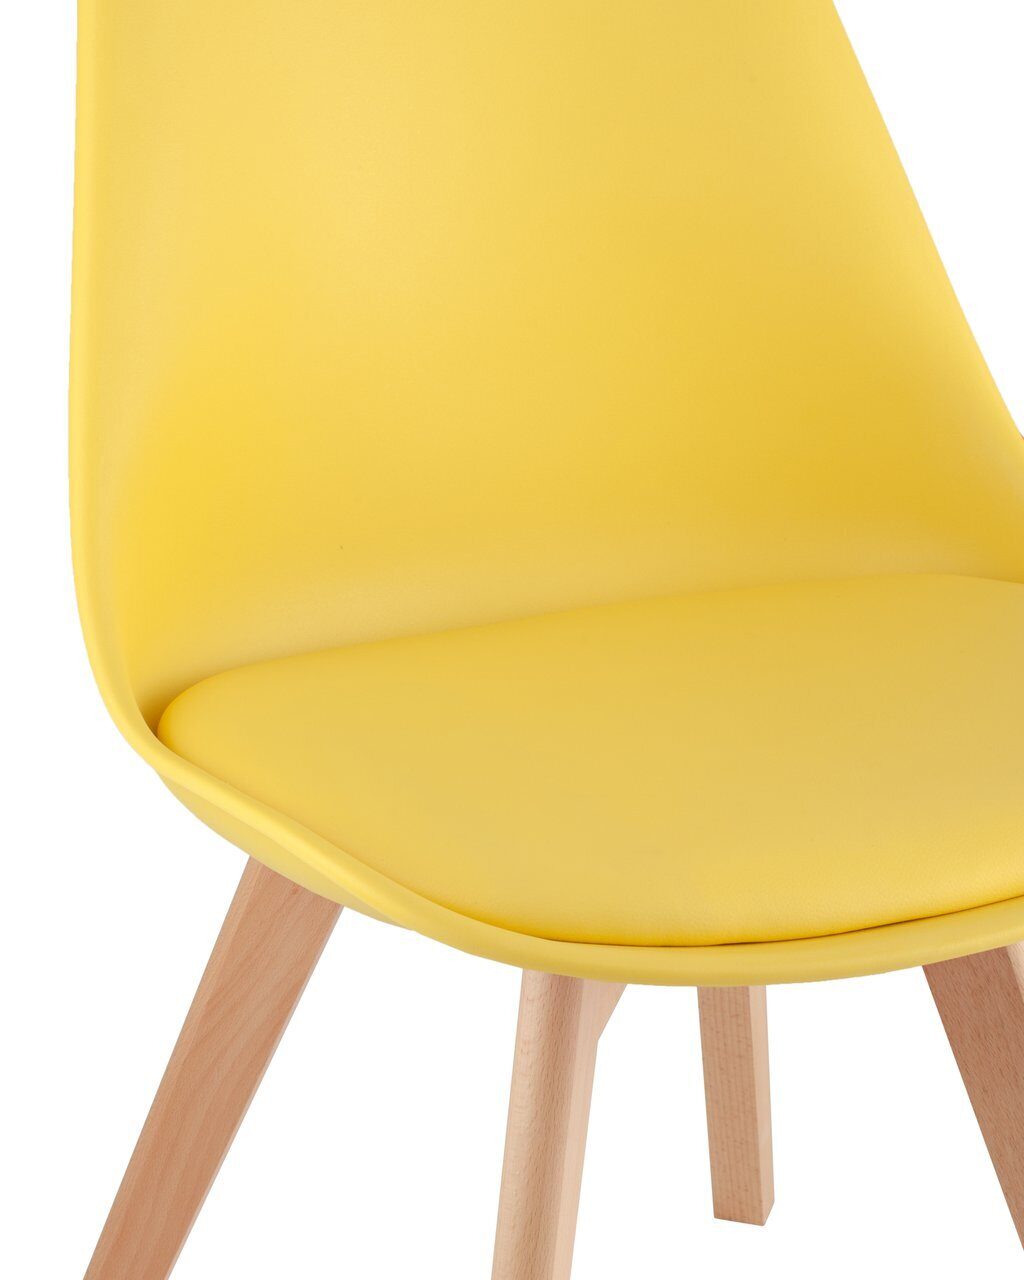 Jerry soft стул желтый